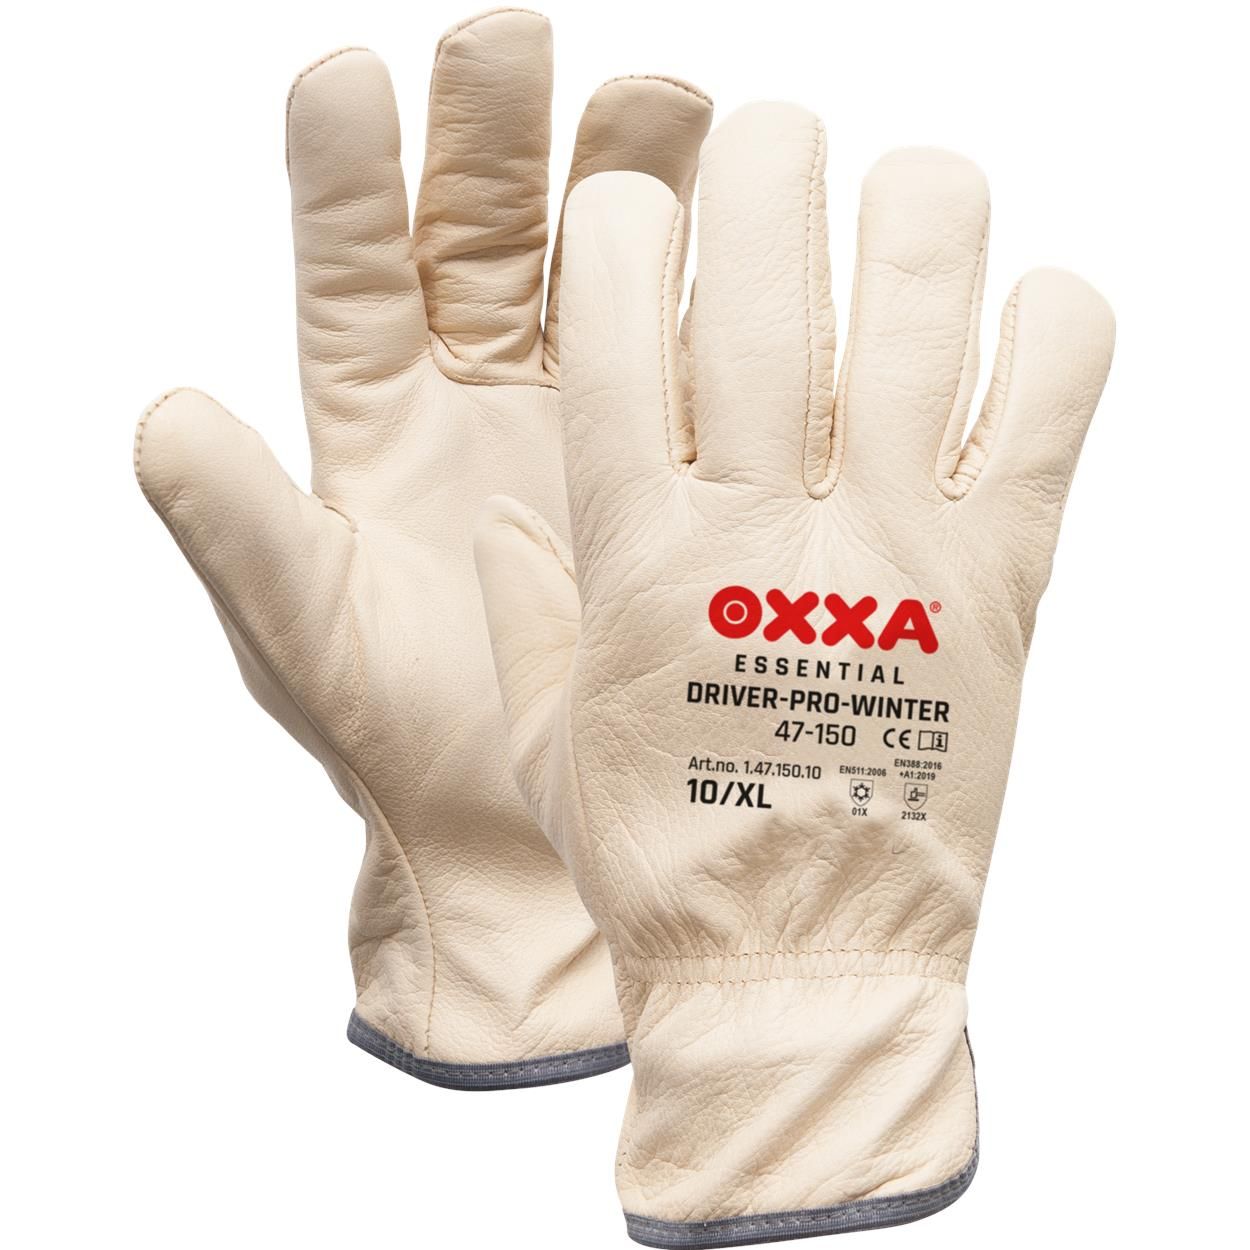 OXXA Driver-Pro-Winter 47-150 werkhandschoenen